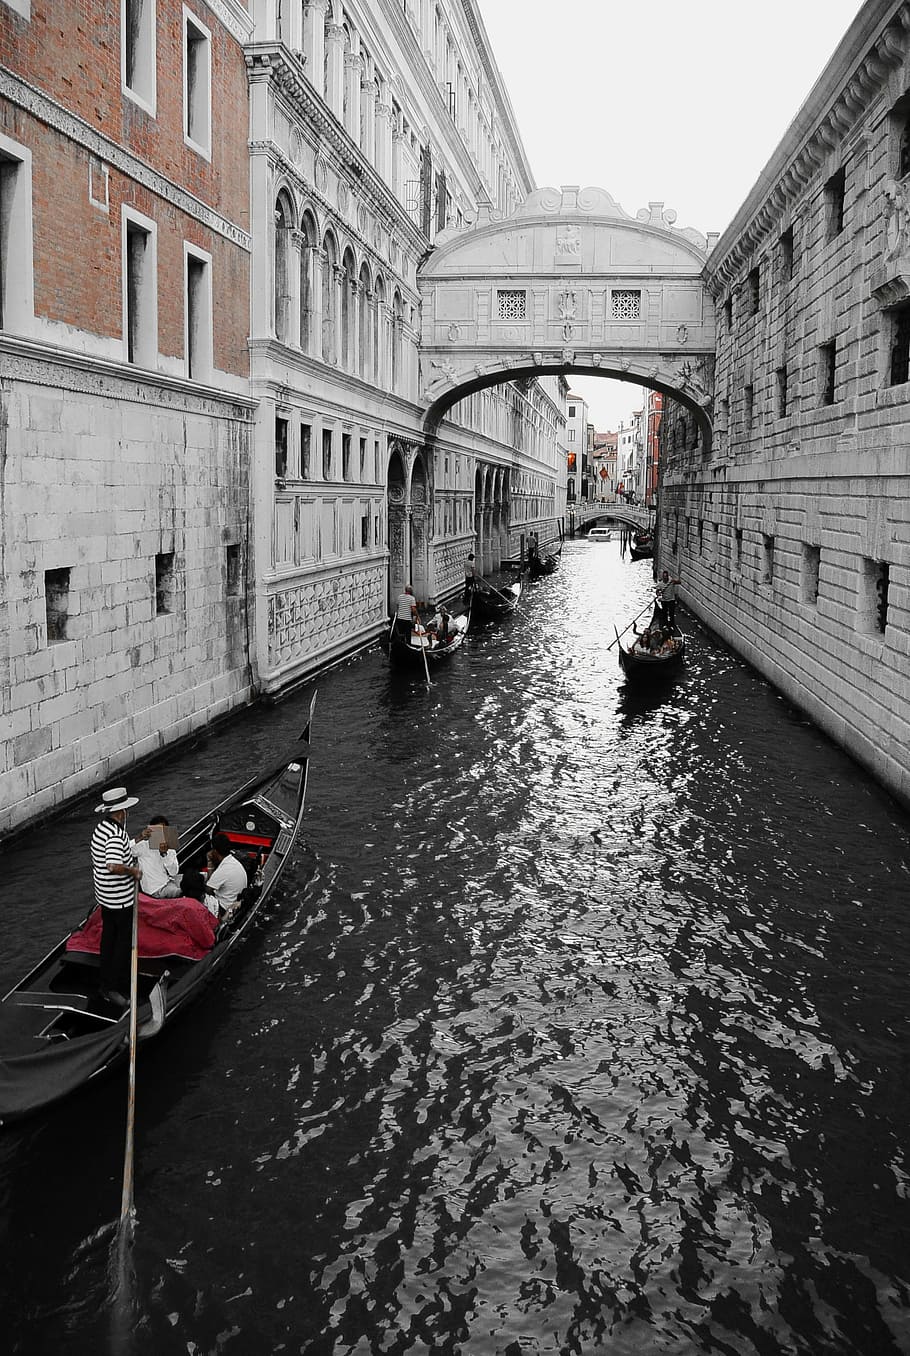 Veneza, Itália, Ponte dos suspiros, Gôndola, canal, bota, canal secundário, água, romântico, gondoleiro